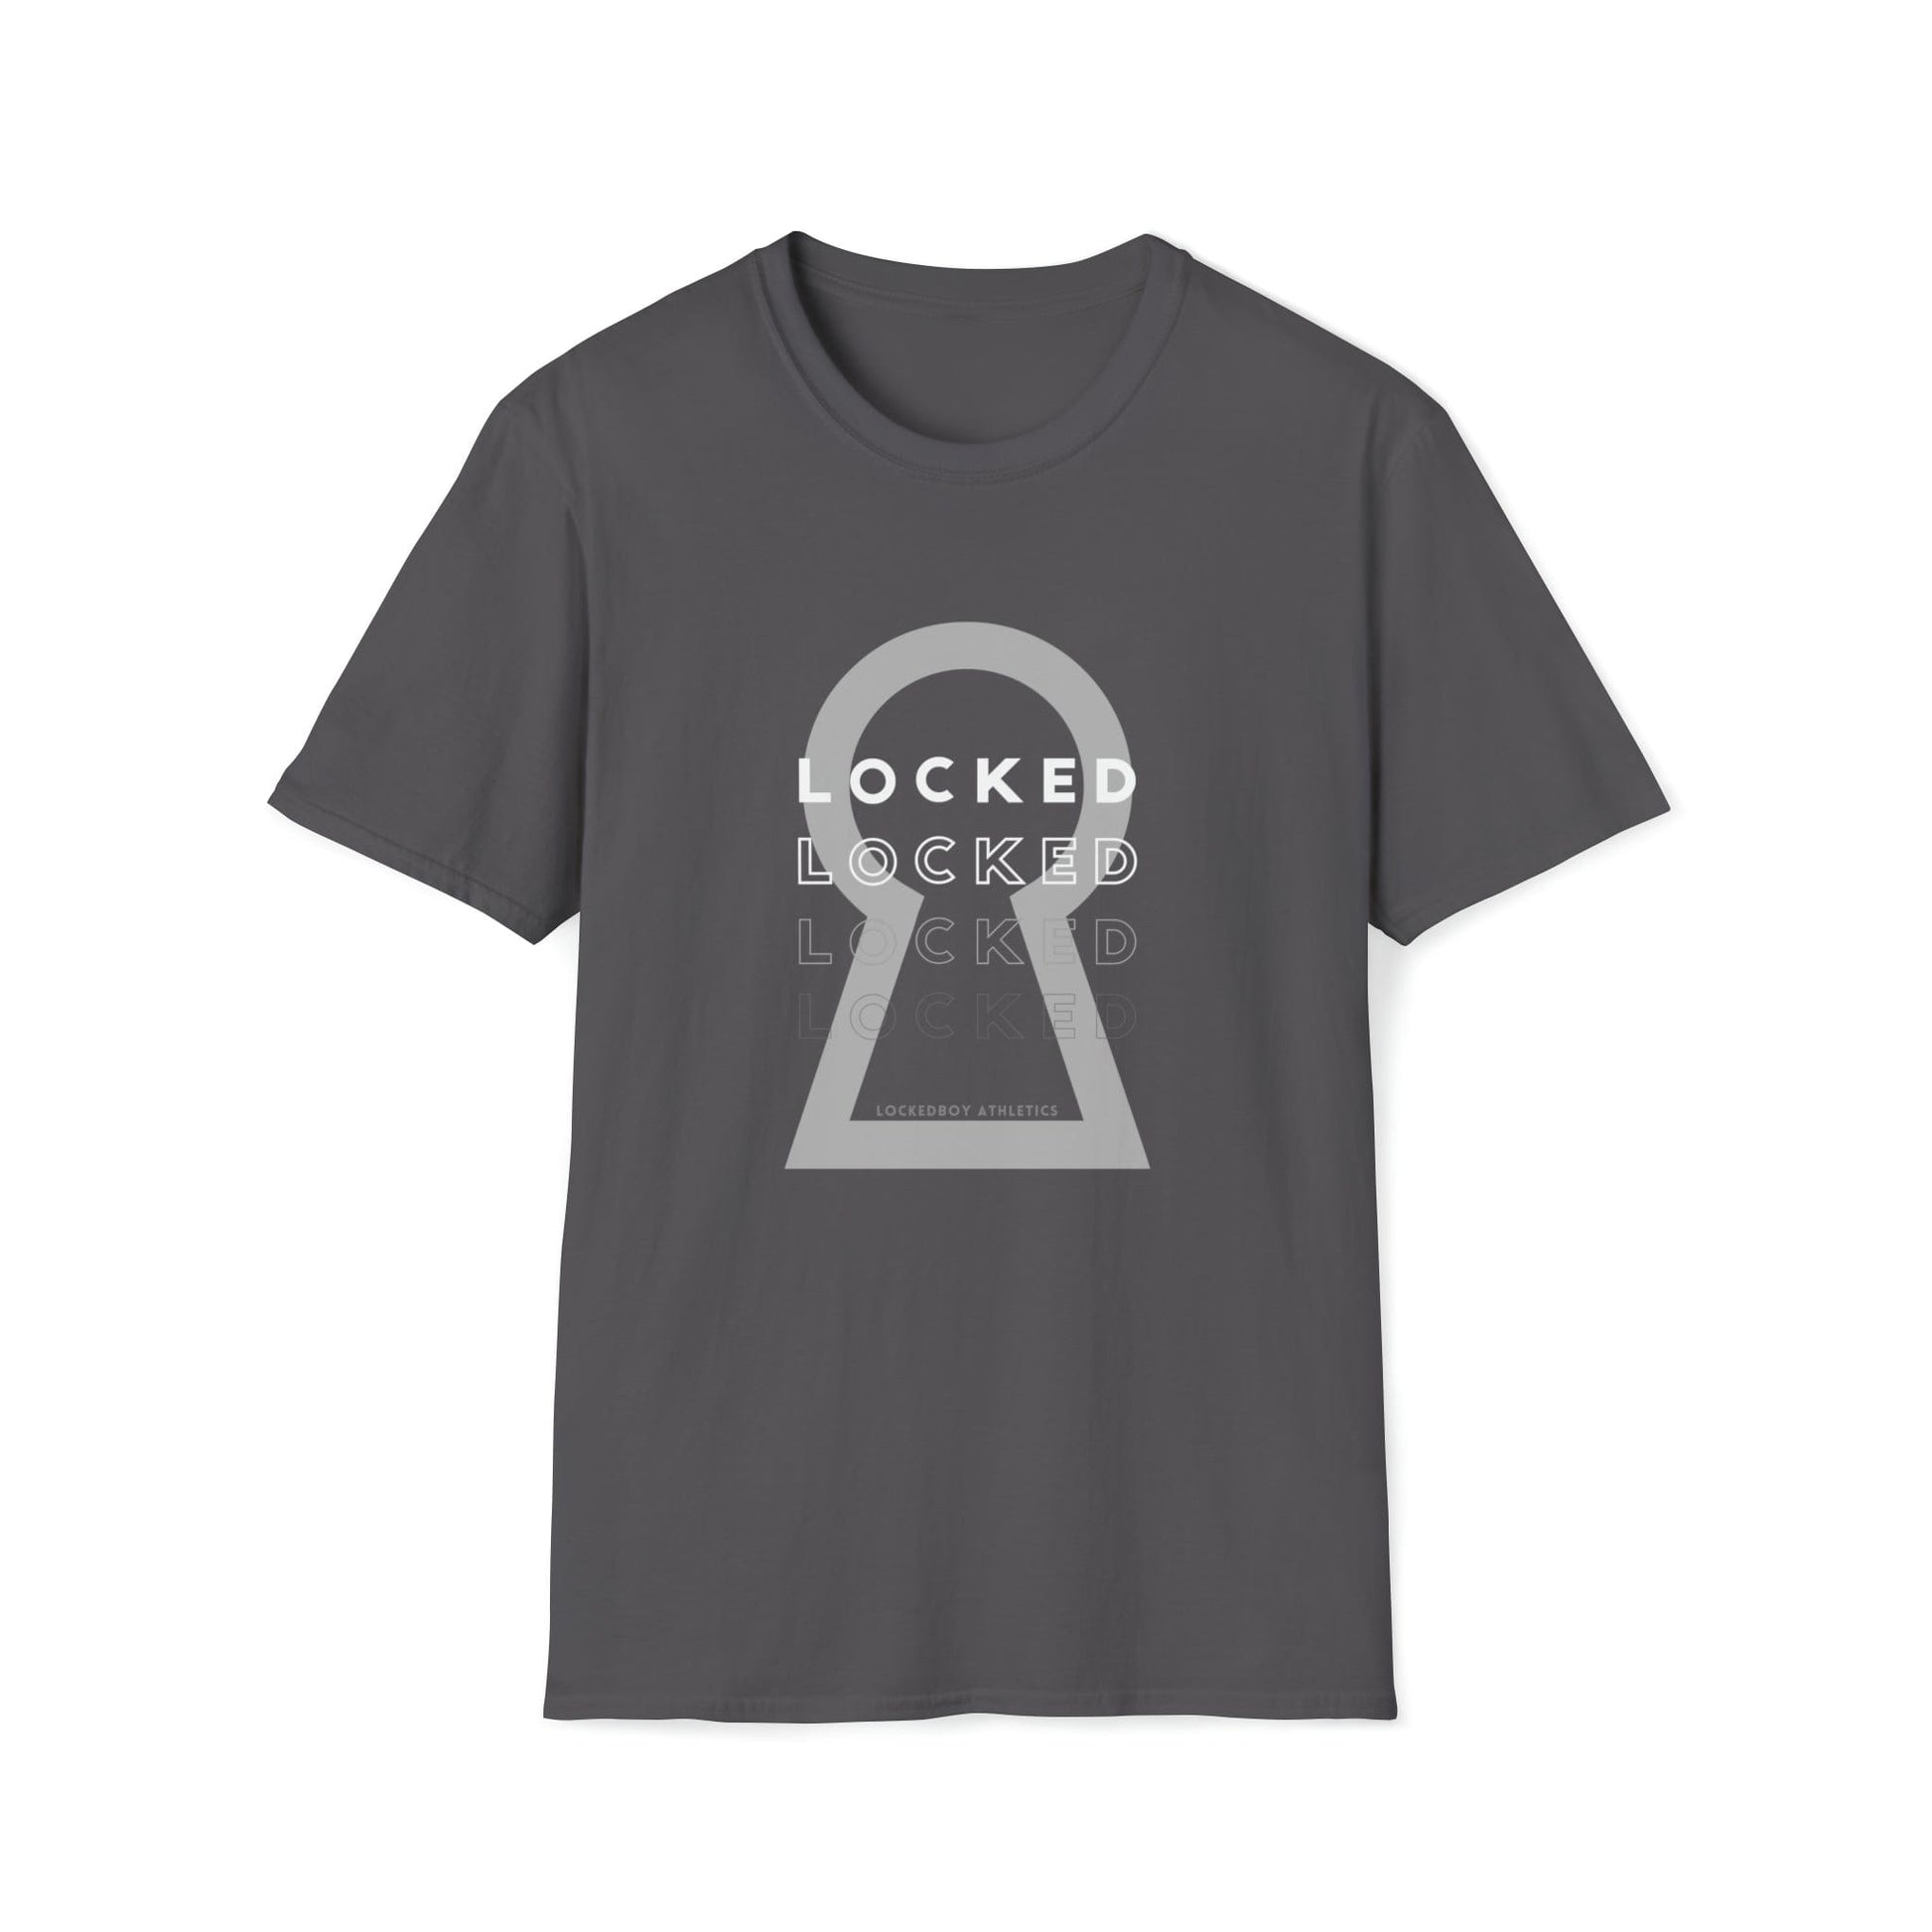 T-Shirt Charcoal / S Lockedboy KeyHOLE Echo - Lockedboy Athletics Chastity Tshirt LEATHERDADDY BATOR